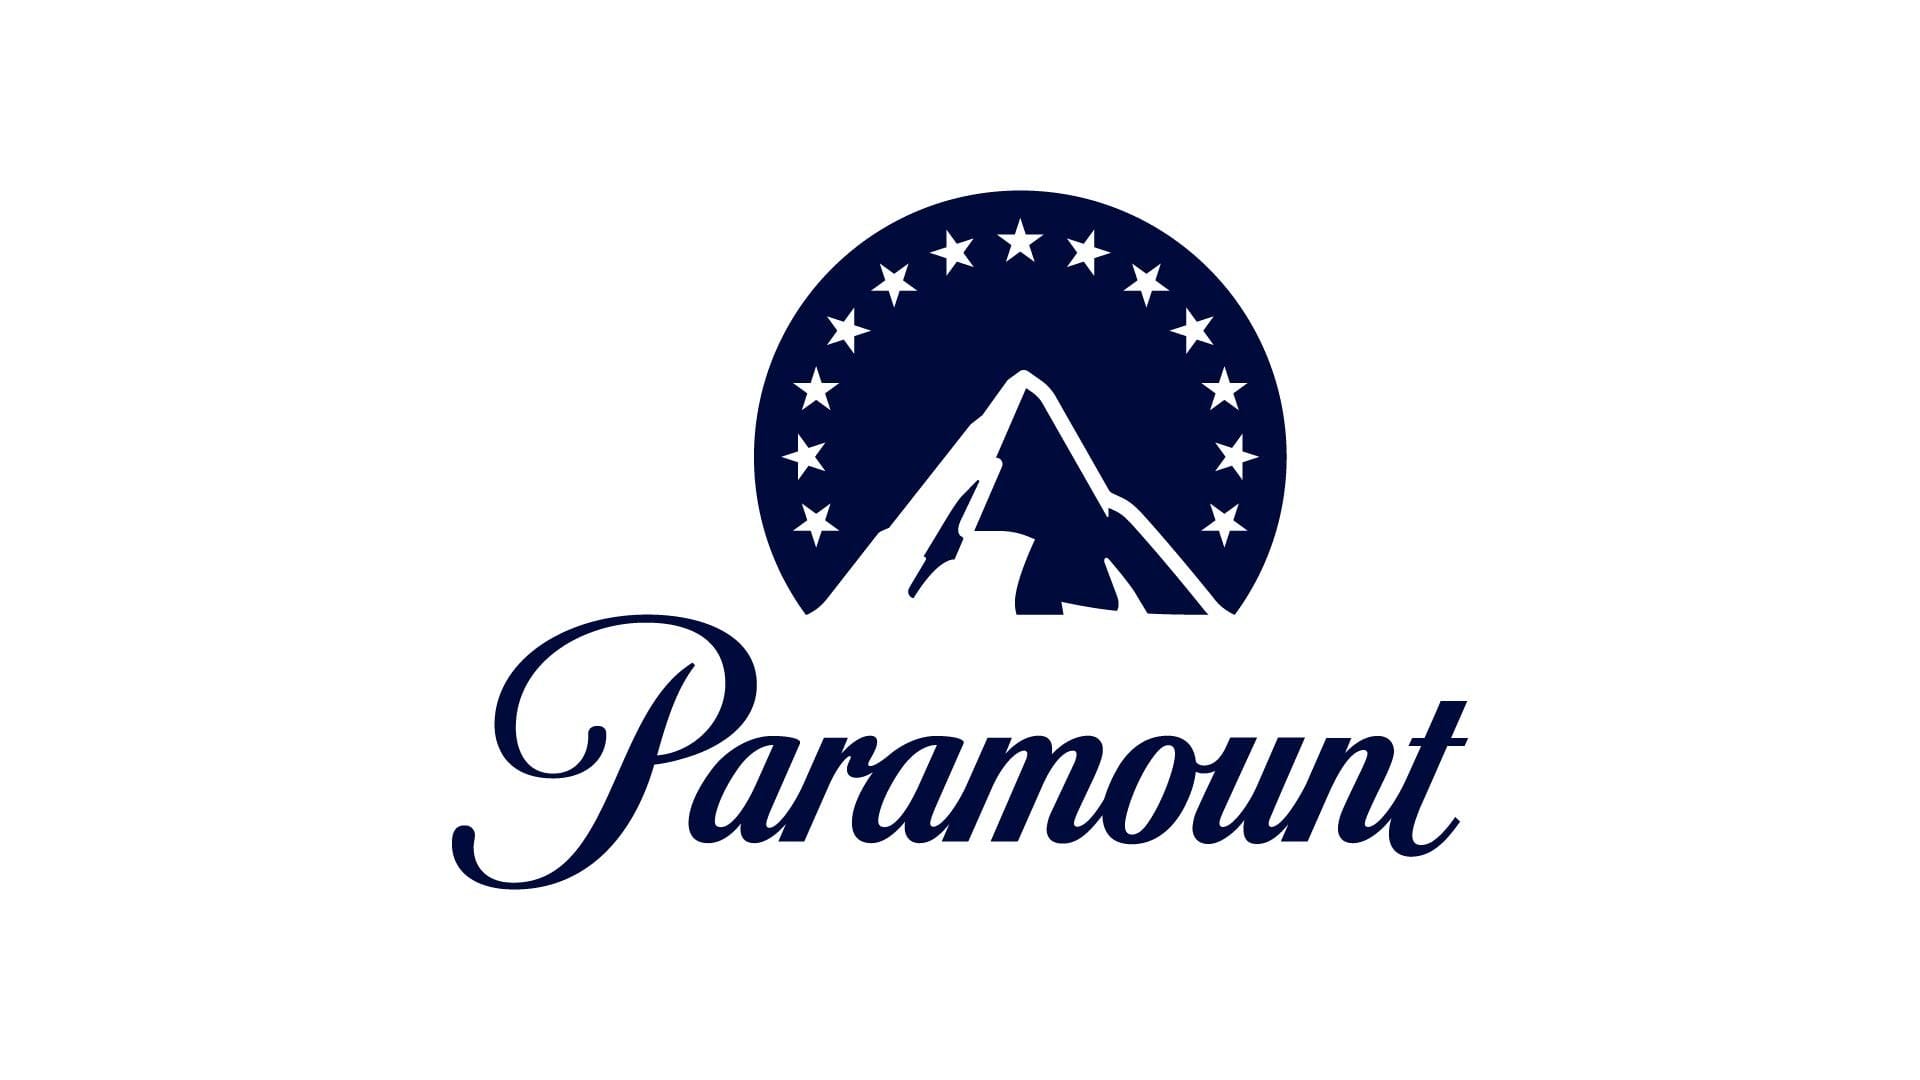 Paramount Nombra a Pamela Kaufman para Dirigir el Mercado Internacional como Presidenta y Directora General de Mercados Internacionales, Productos de Consumo Global y Experiencias